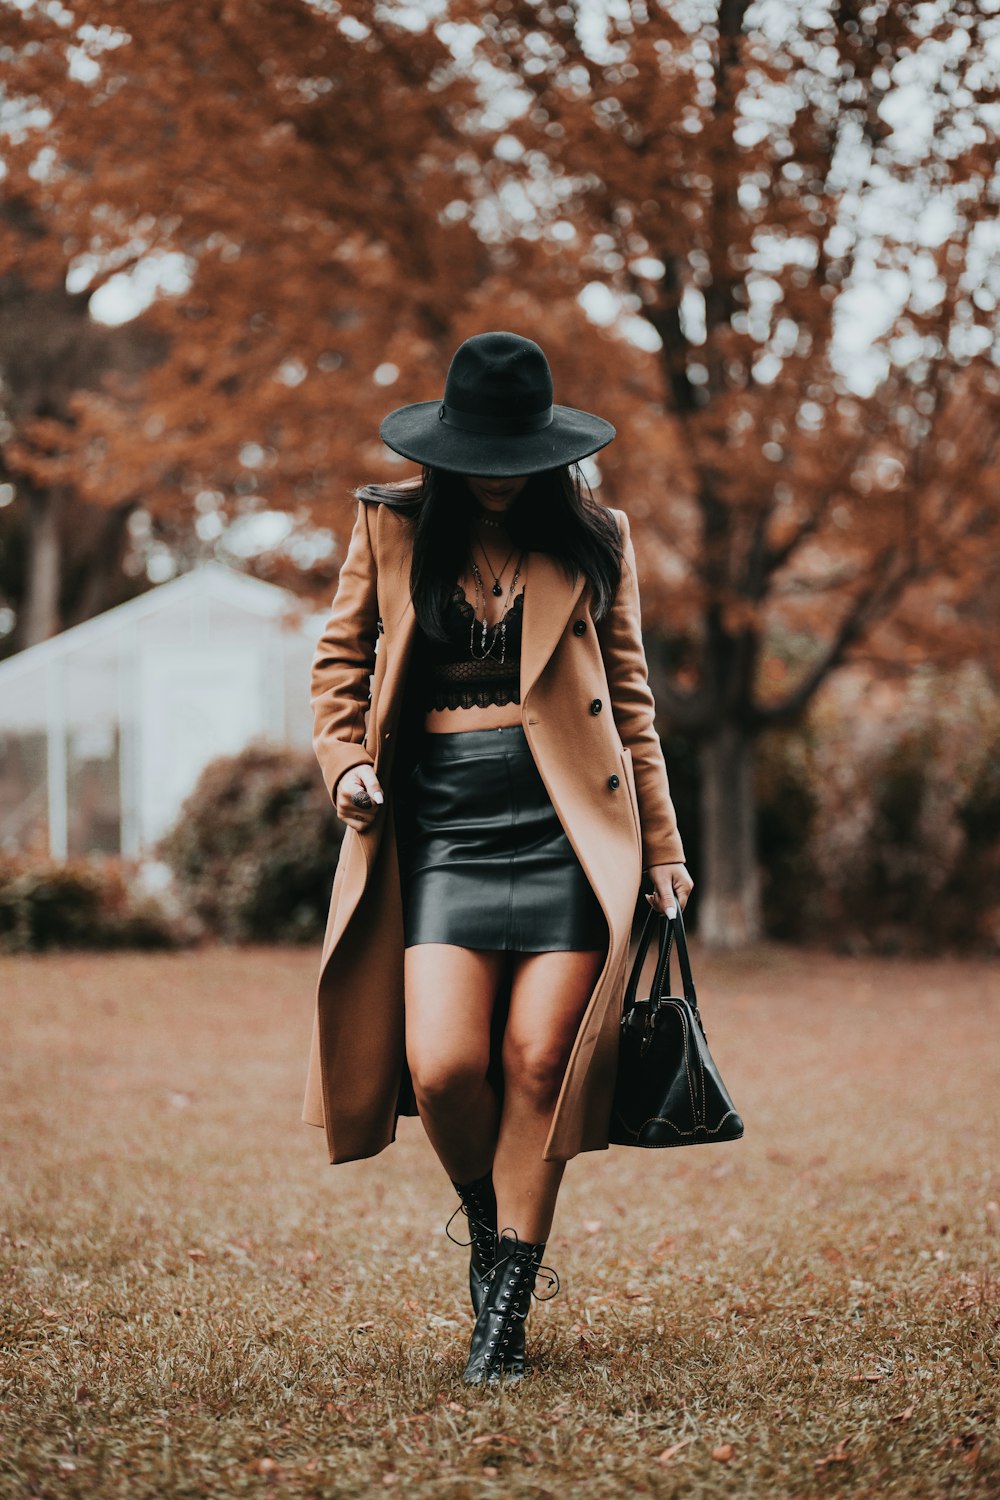 갈색 코트와 검은 치마를 입은 여자가 검은 모자를 쓰고 갈색 잔디밭에 서 있다